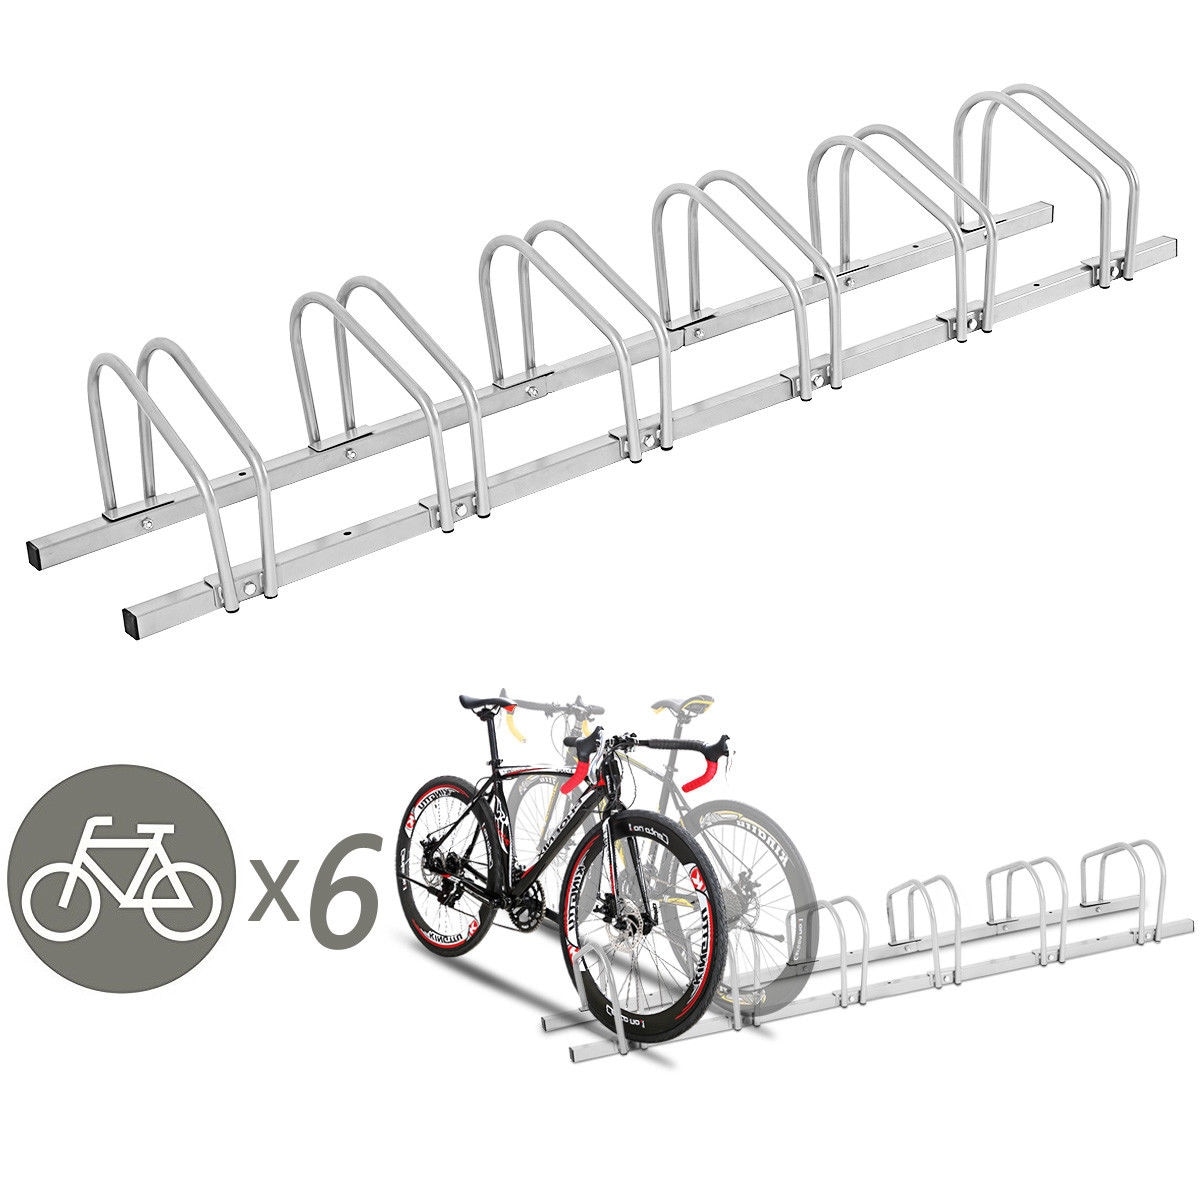 6 bike car rack